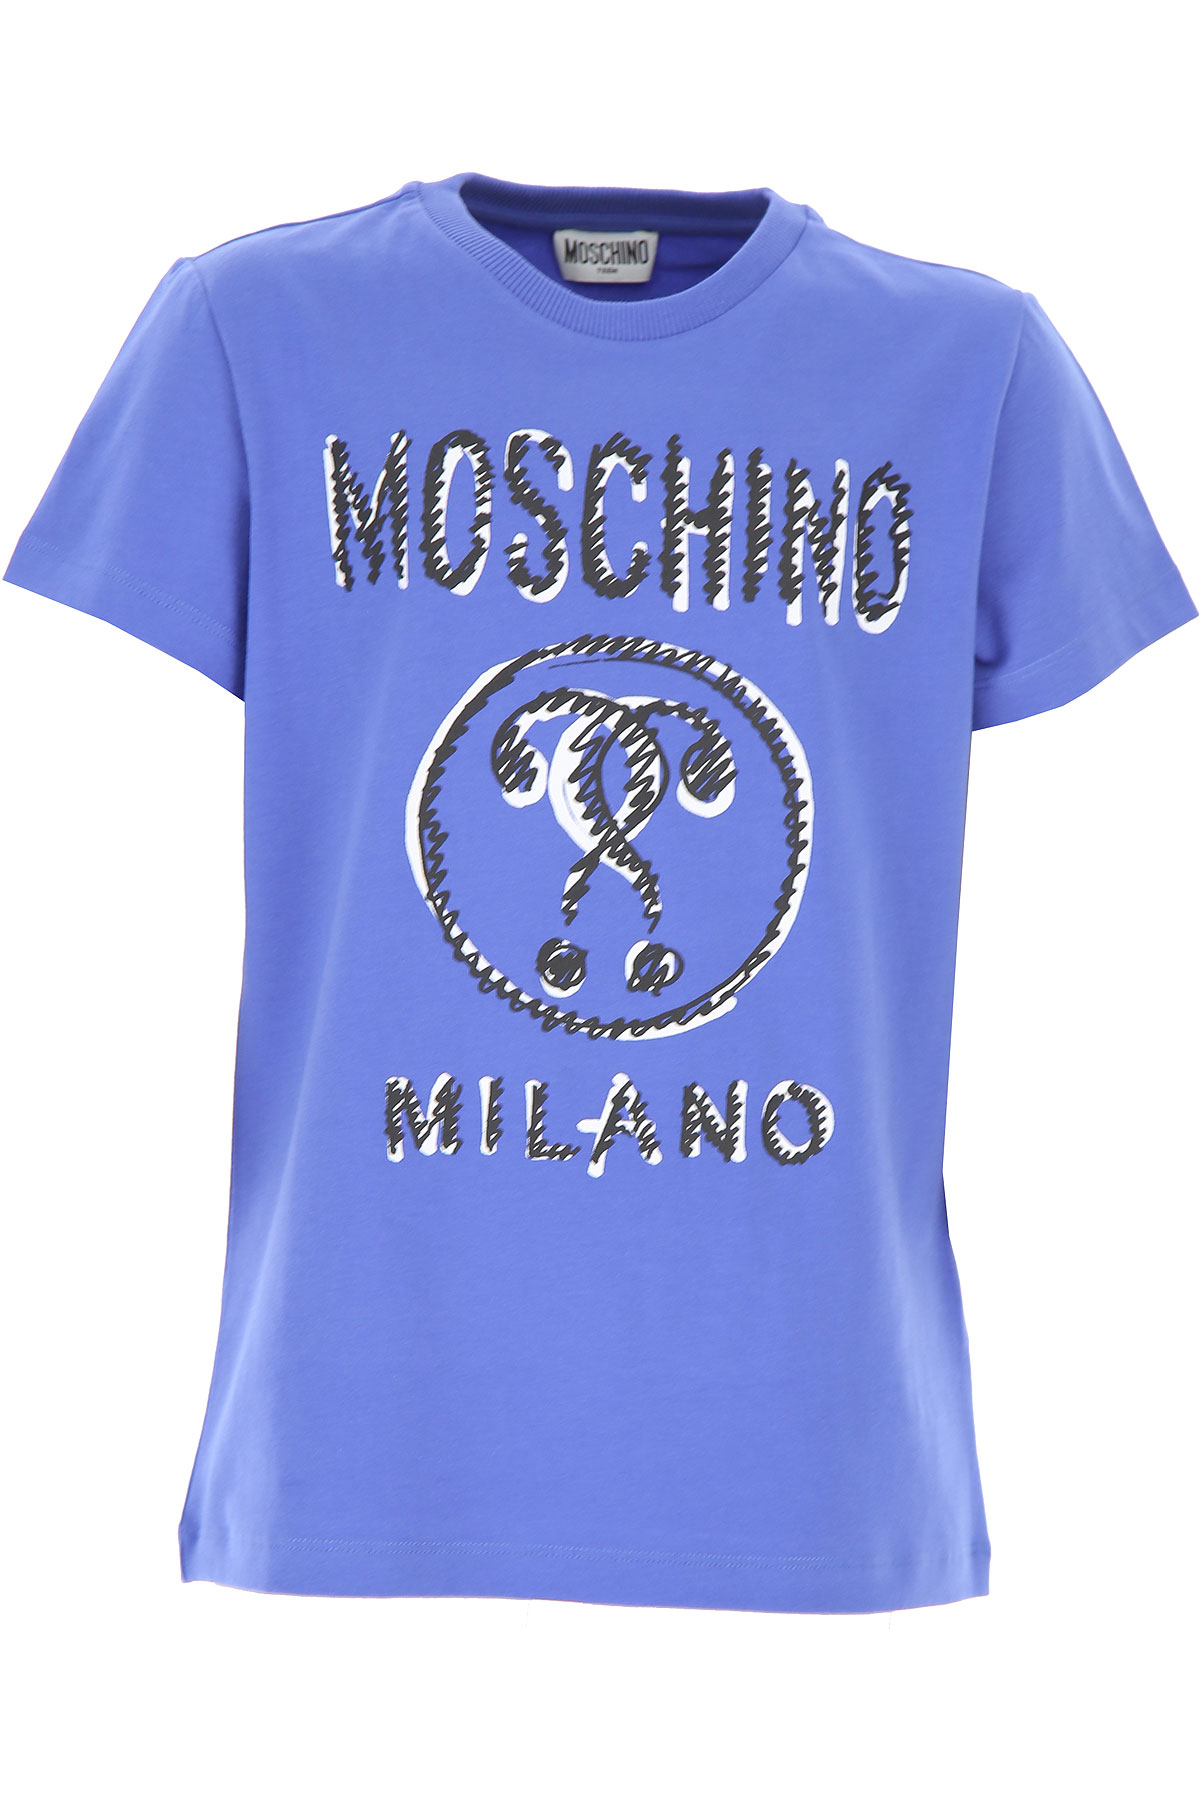 Moschino Kinder T-Shirt für Jungen Günstig im Sale, Bluette, Baumwolle, 2017, 10Y 12Y 14Y 8Y